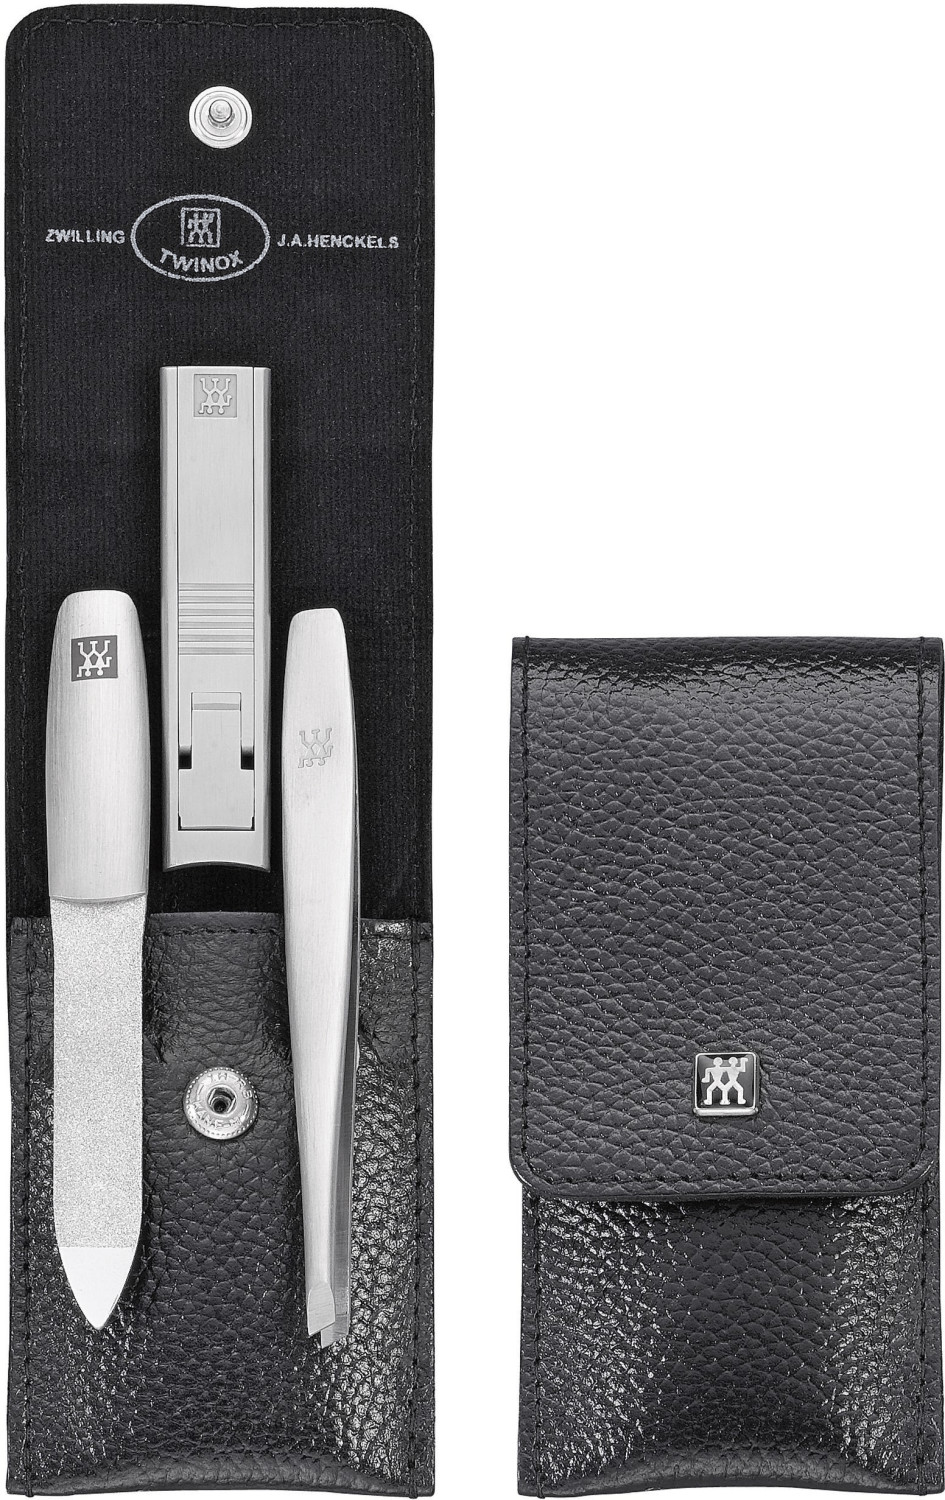 ZWILLING Twinox Taschen-Etui (3-tlg.) schwarz 59,99 Rindleder ab € Preisvergleich | bei